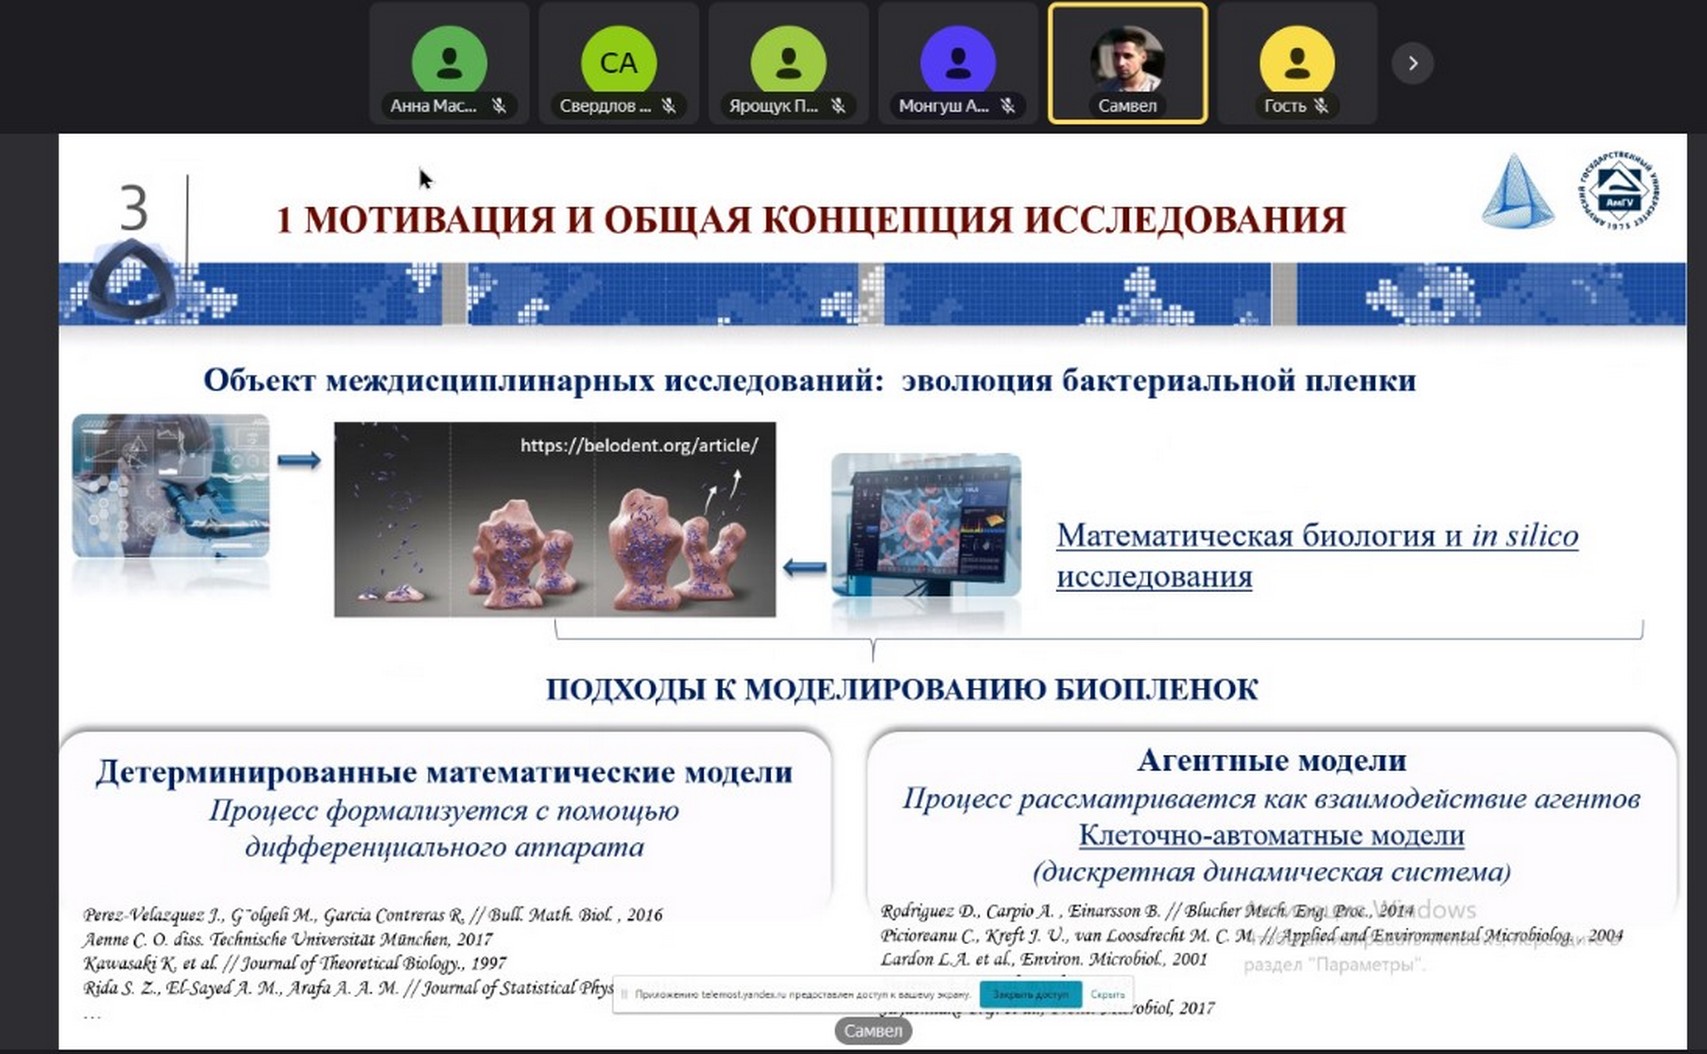 Сотрудники лаборатории математического моделирования сложных физических и биологических систем приняли online участие в научной конференции в Воронеже.